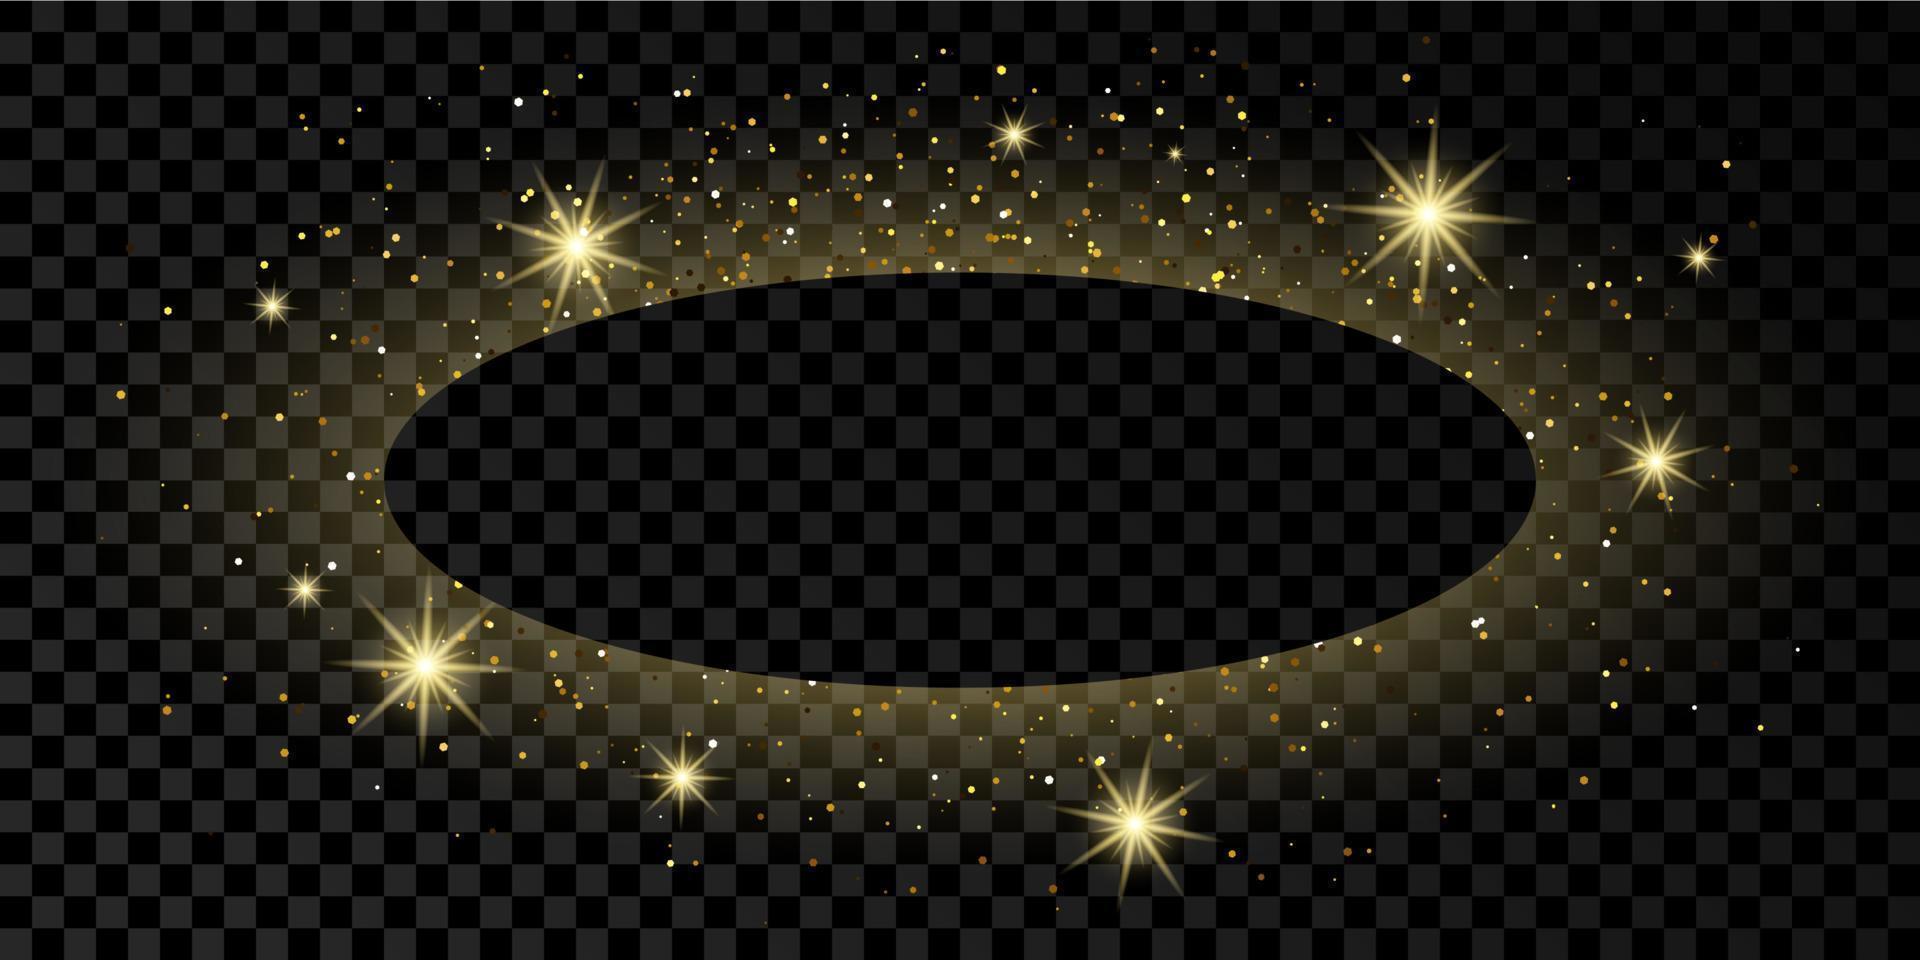 moldura oval dourada com glitter, brilhos e chamas em fundo transparente escuro. cenário de luxo vazio. ilustração vetorial. vetor